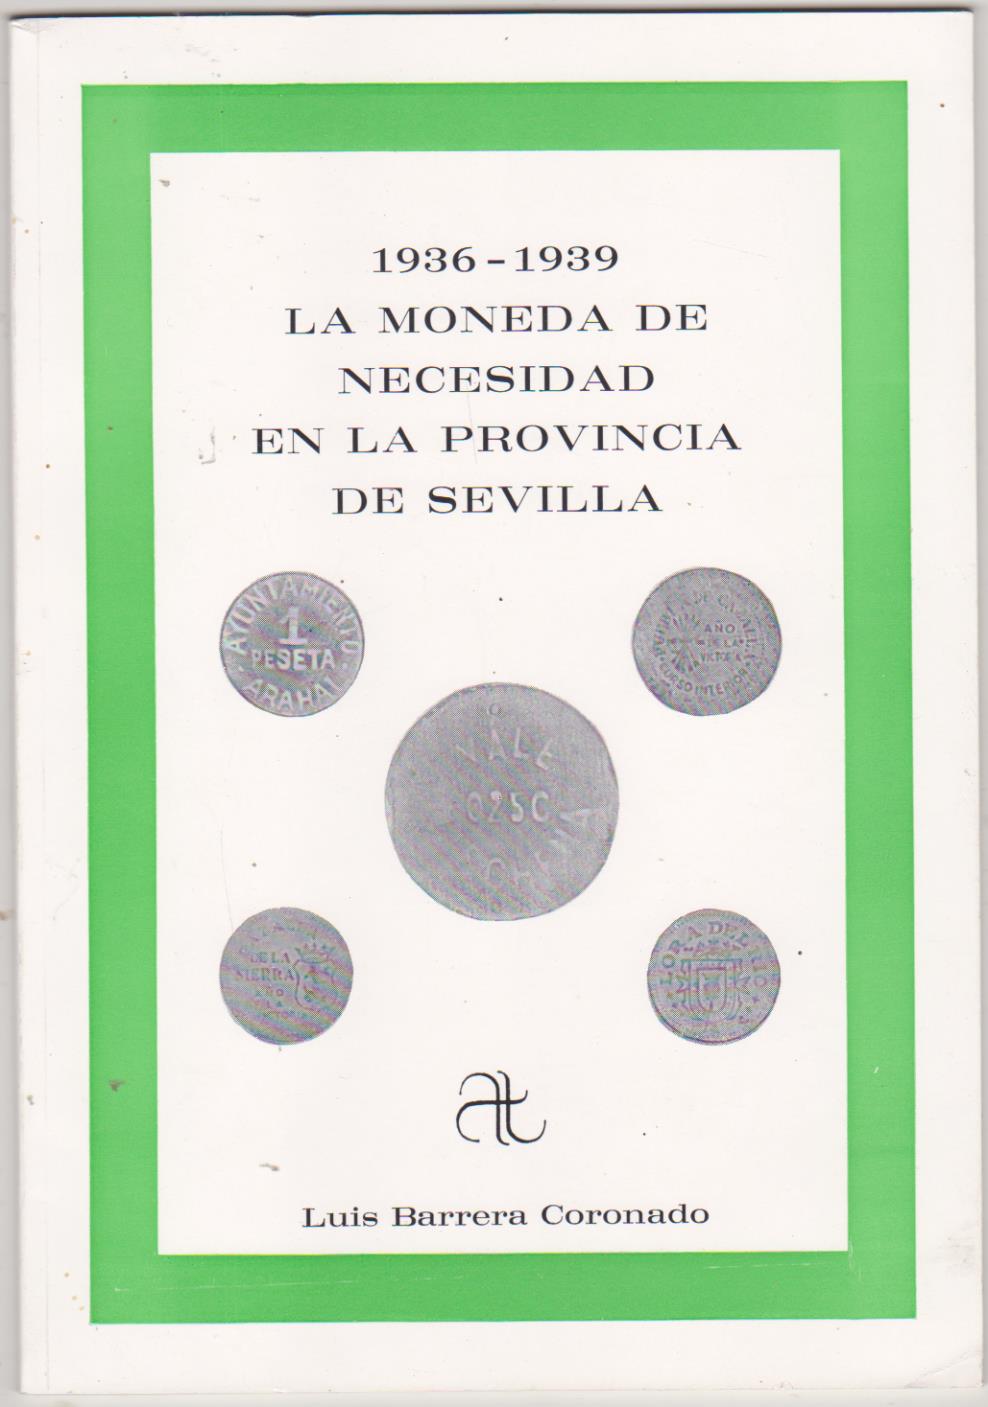 Luis Barrera Coronado. 1936-1939. La Moneda de Necesidad en la Provincia de Sevilla. Artis Traditio. Sevilla 1989. SIN USAR